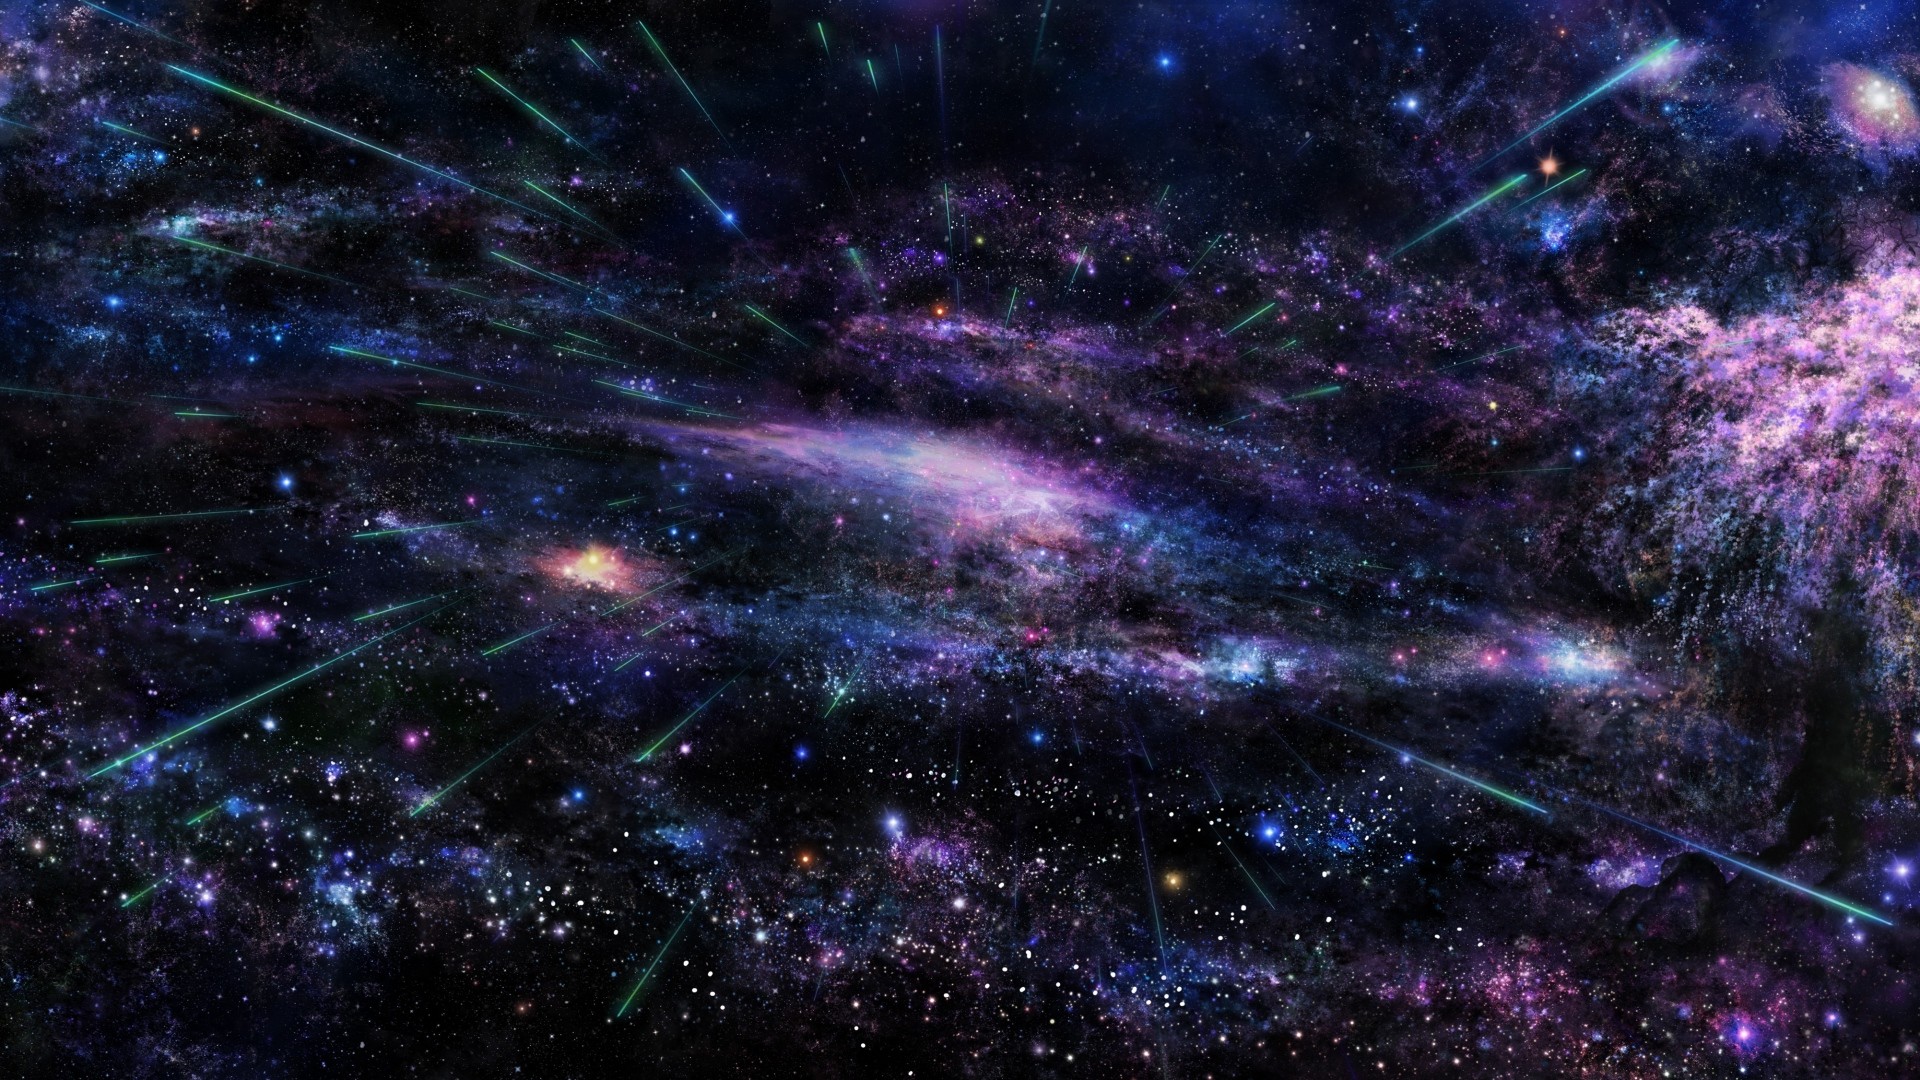 Universe, violet blue cluster of stars